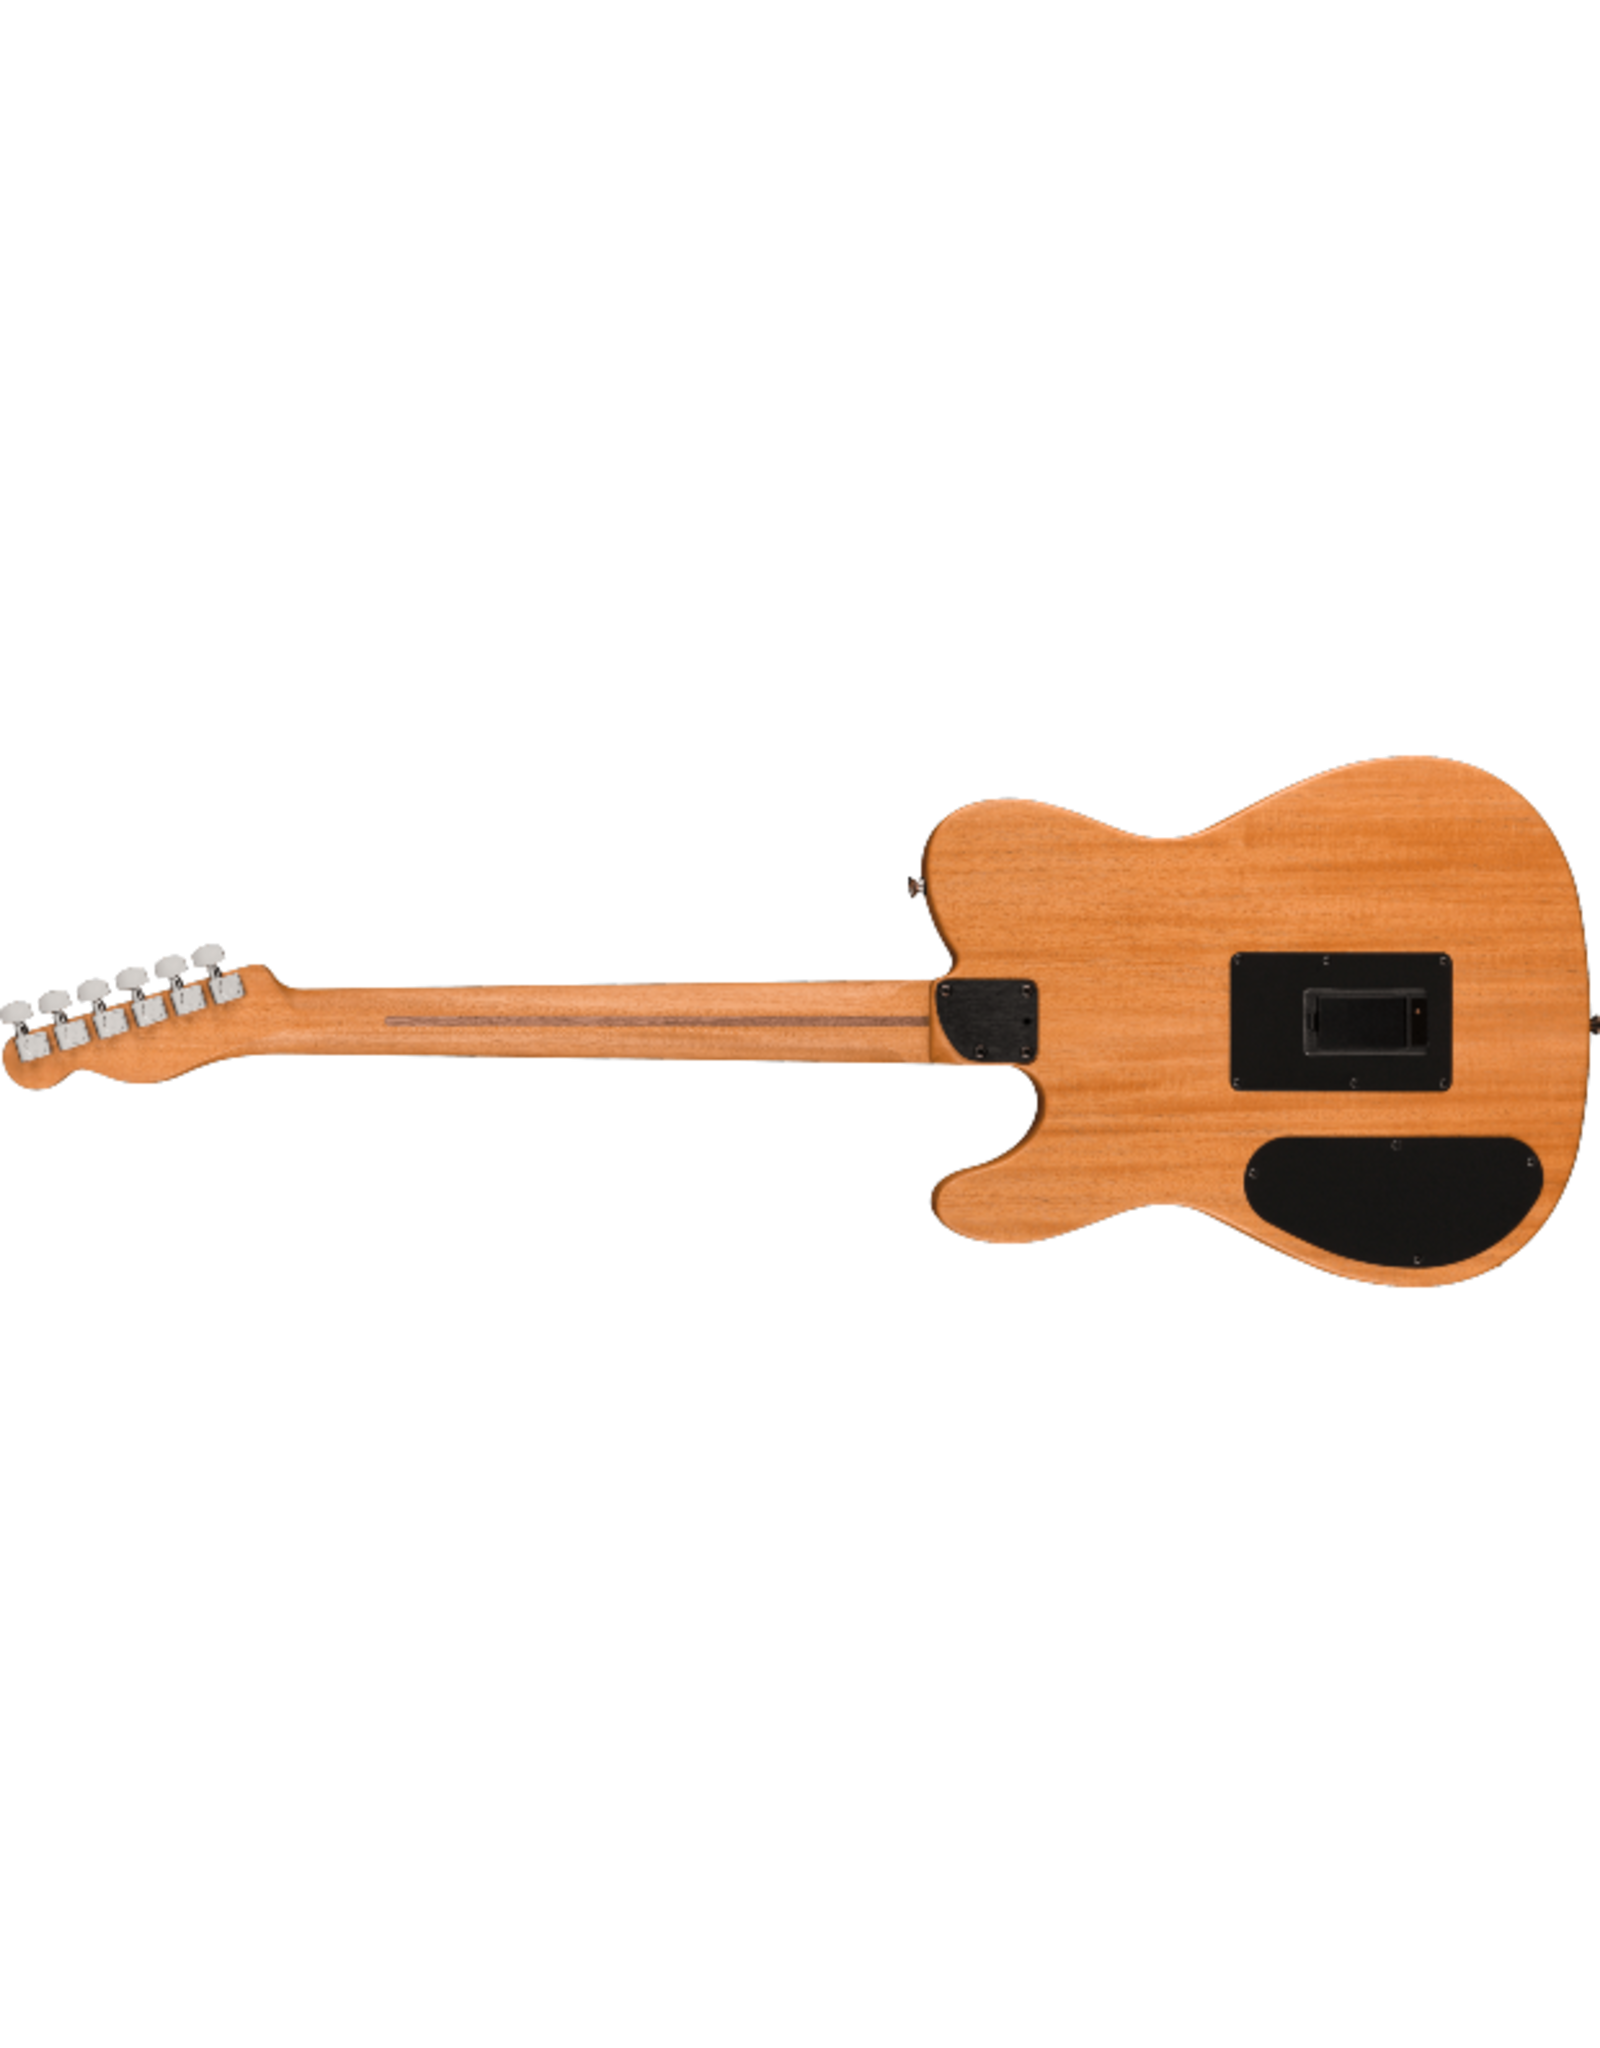 Fender Fender Acoustasonic® Player Telecaster®, Arctic White Guitar